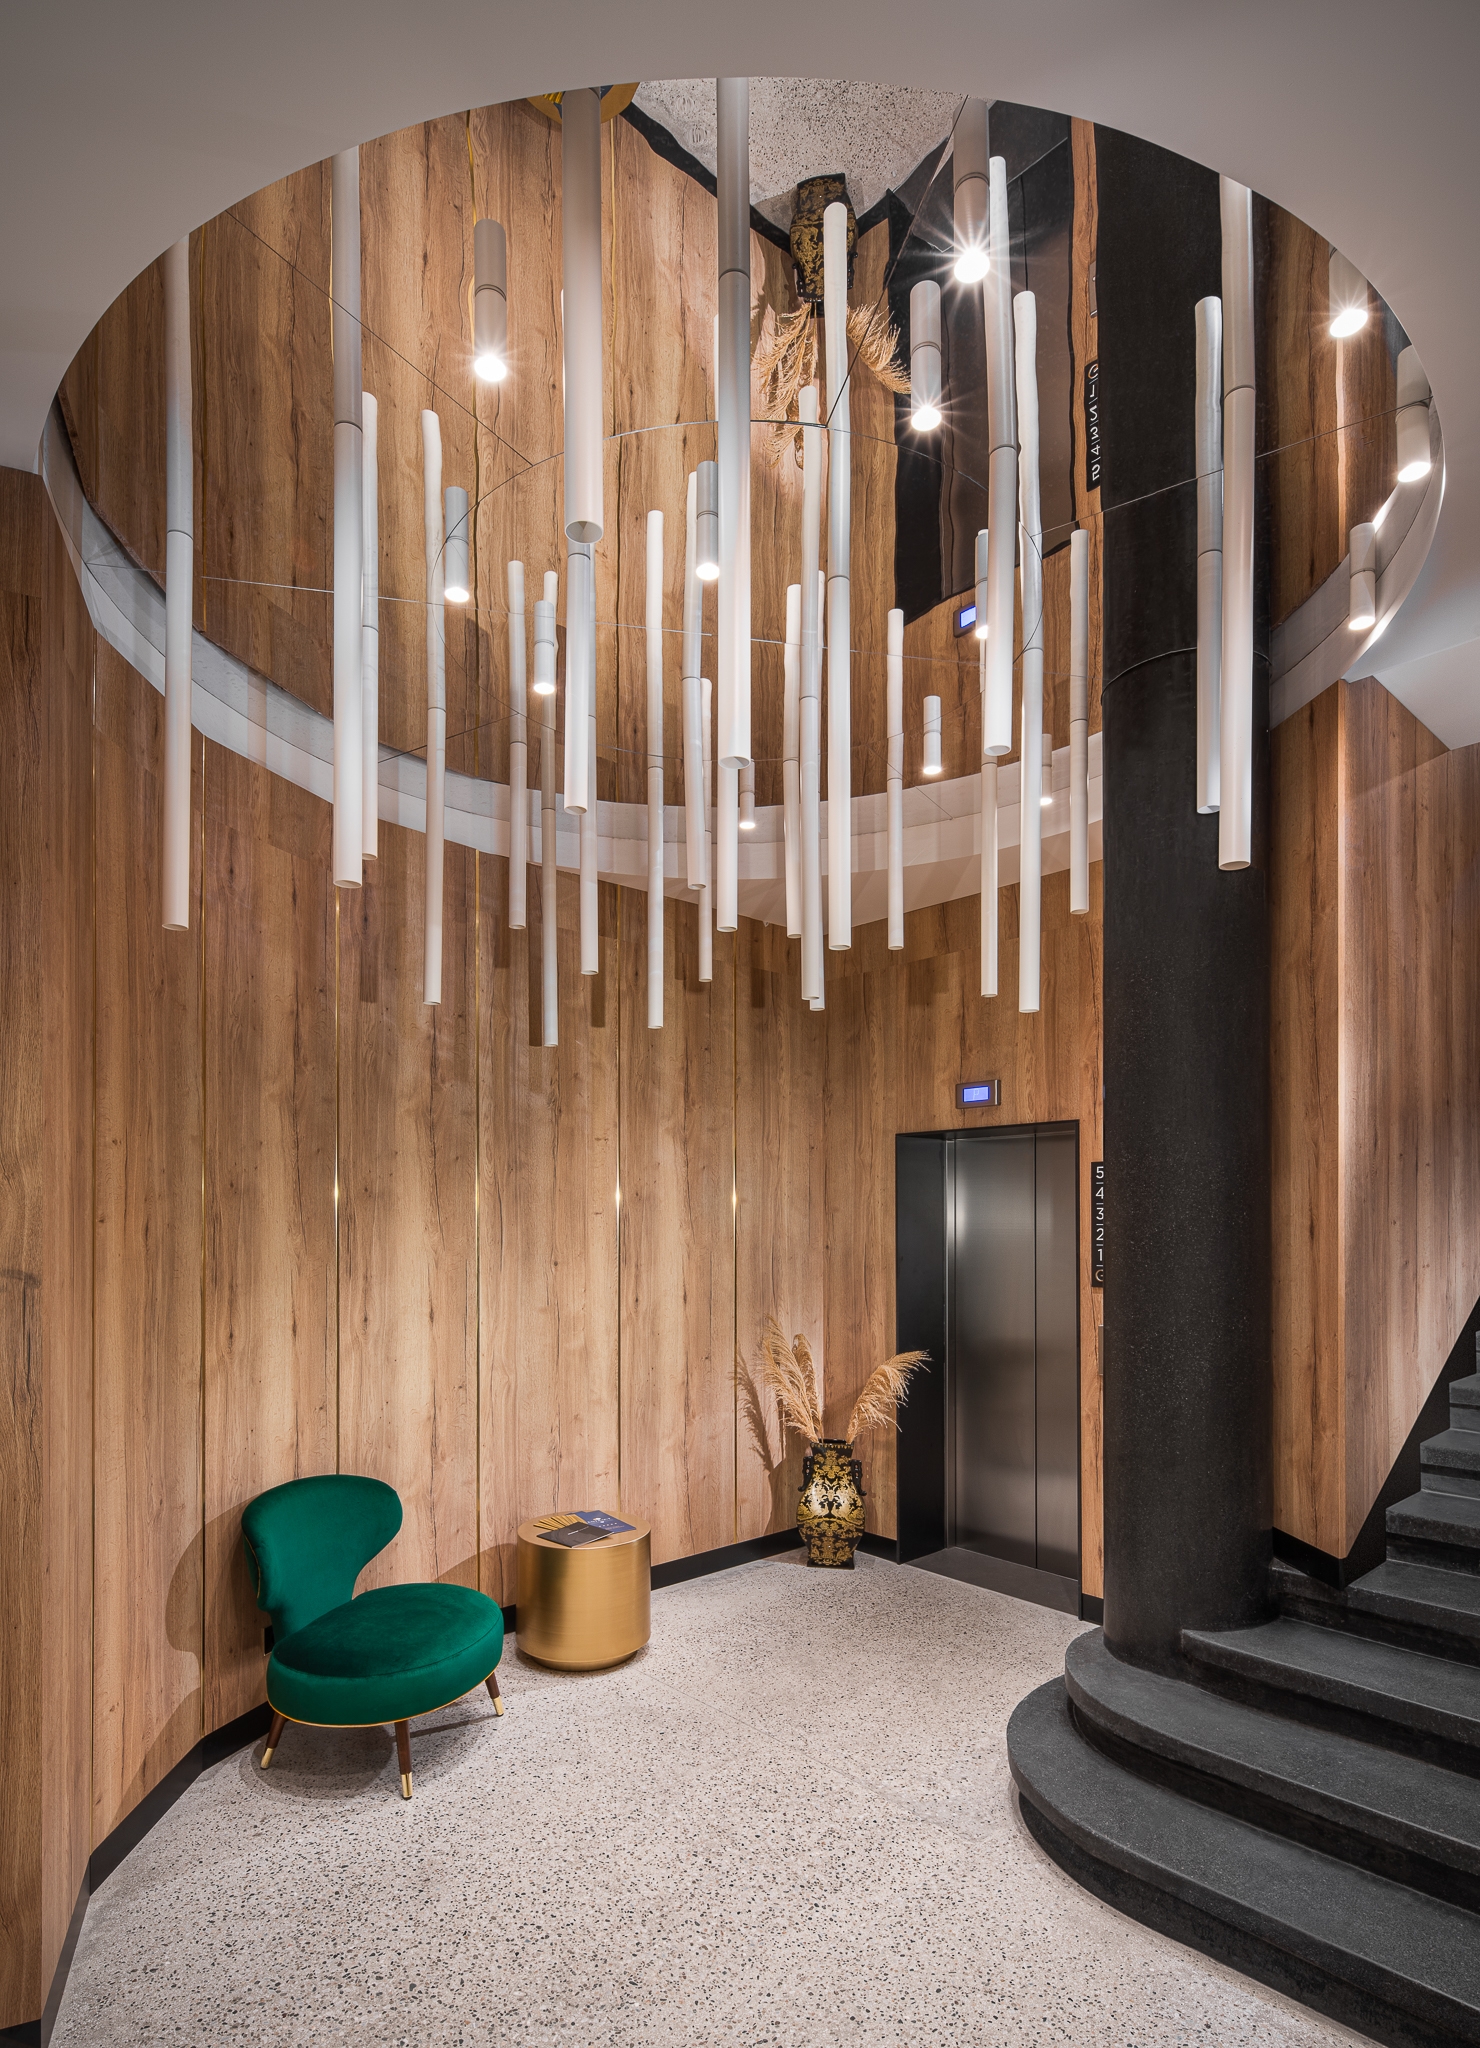 图片[2]|入口127协同办公办公室-索菲亚|ART-Arrakis | 建筑室内设计的创新与灵感